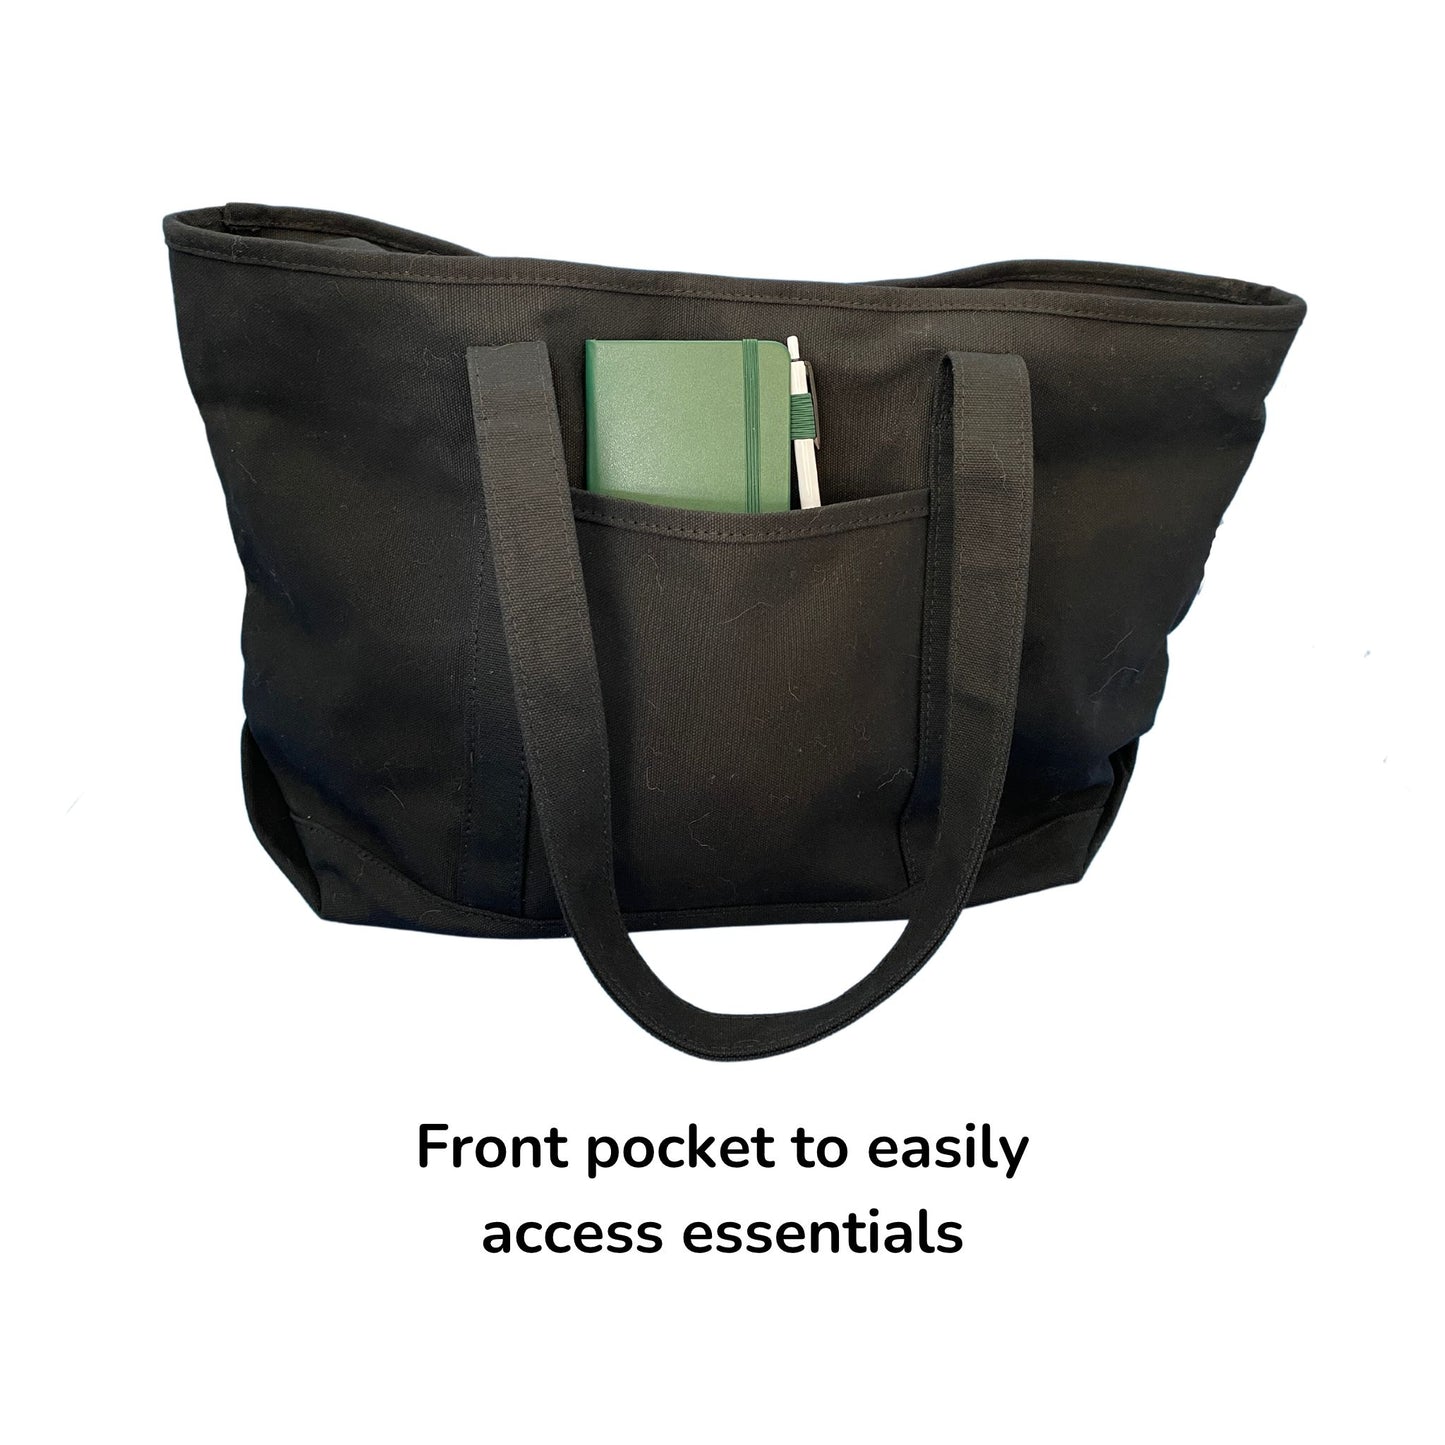 Caregiver Grab and Go Hospital Comfort Bag (Large)